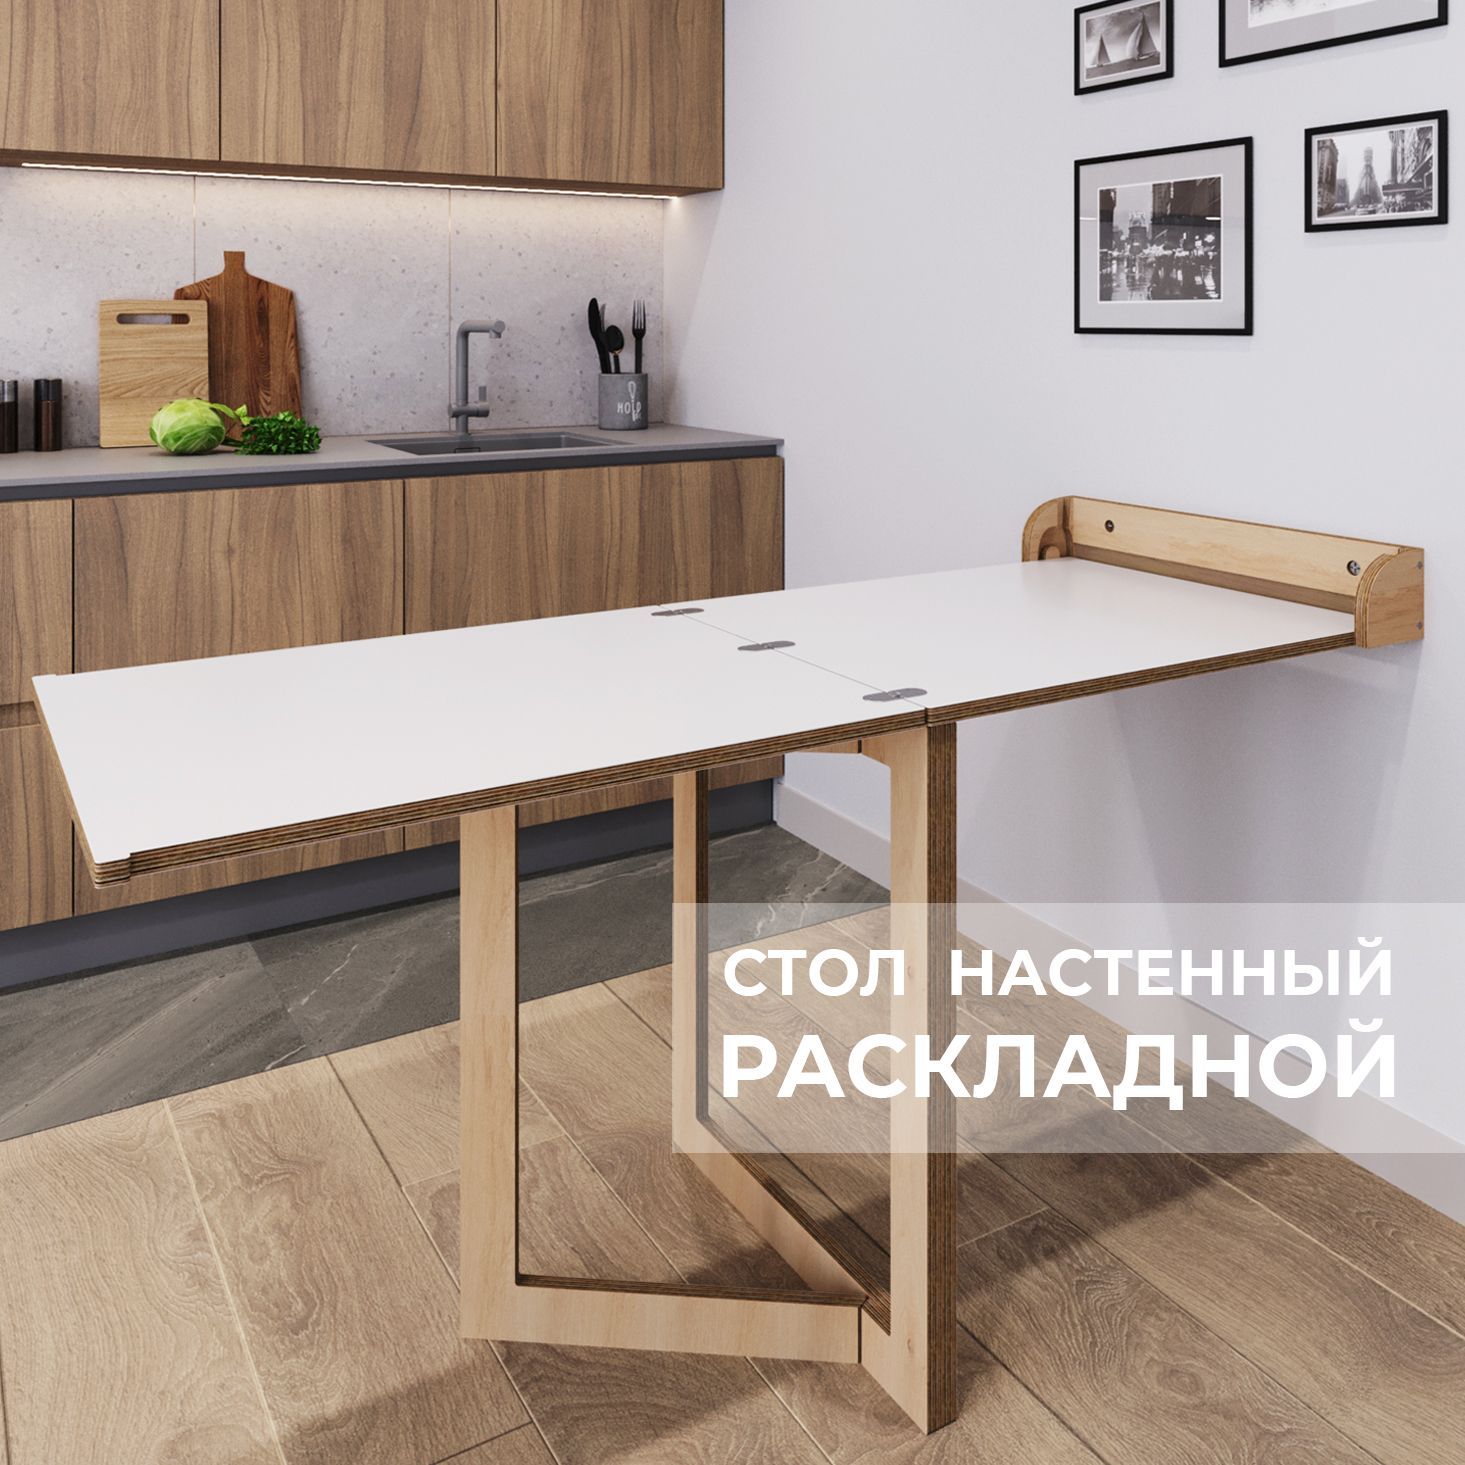 Как изготовить складной стол | Складной стол, Походный столик, Стол из фанеры